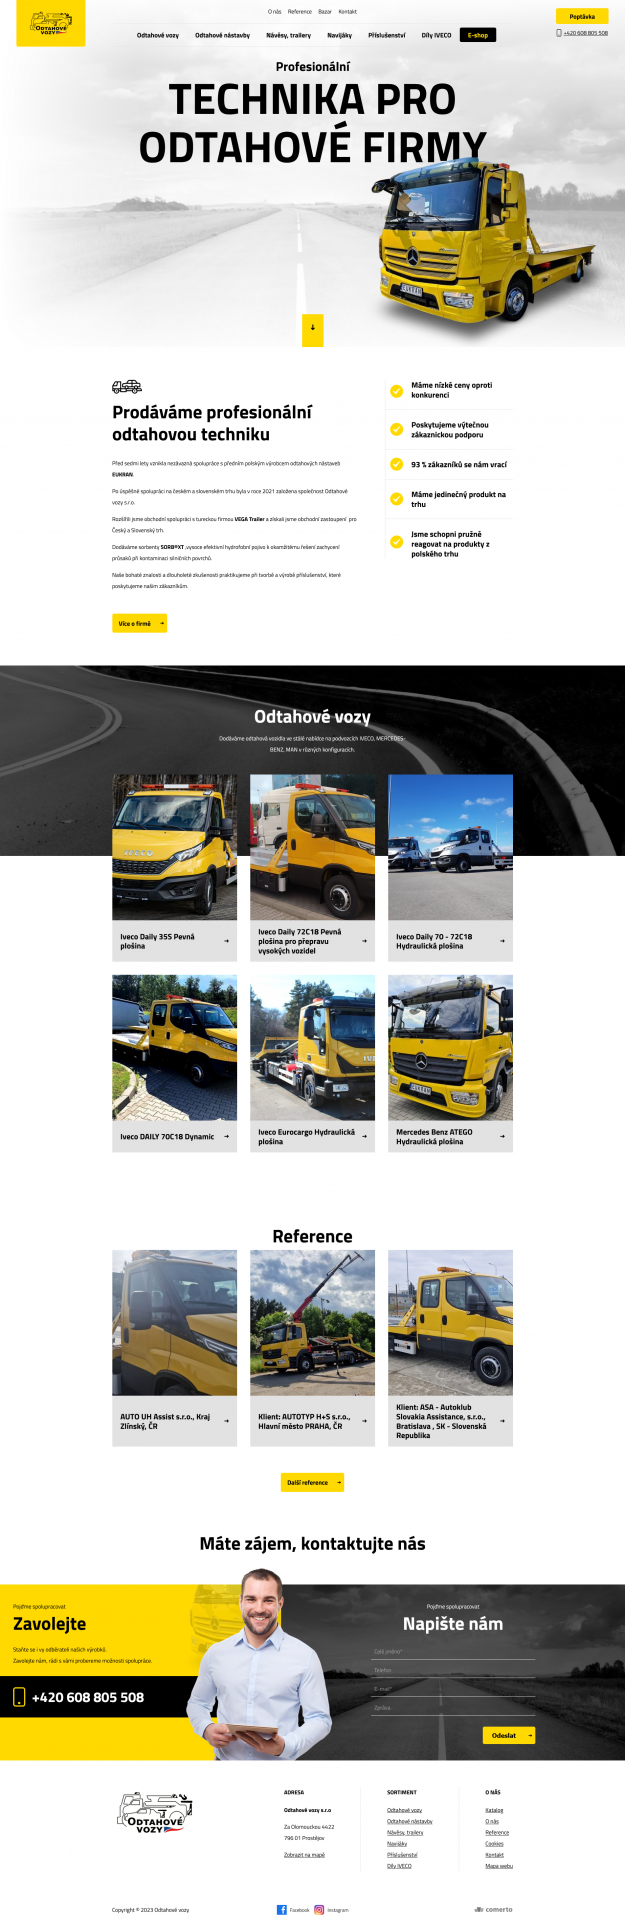 Tvorba nového webu pro Odtahové vozy - Screenshot